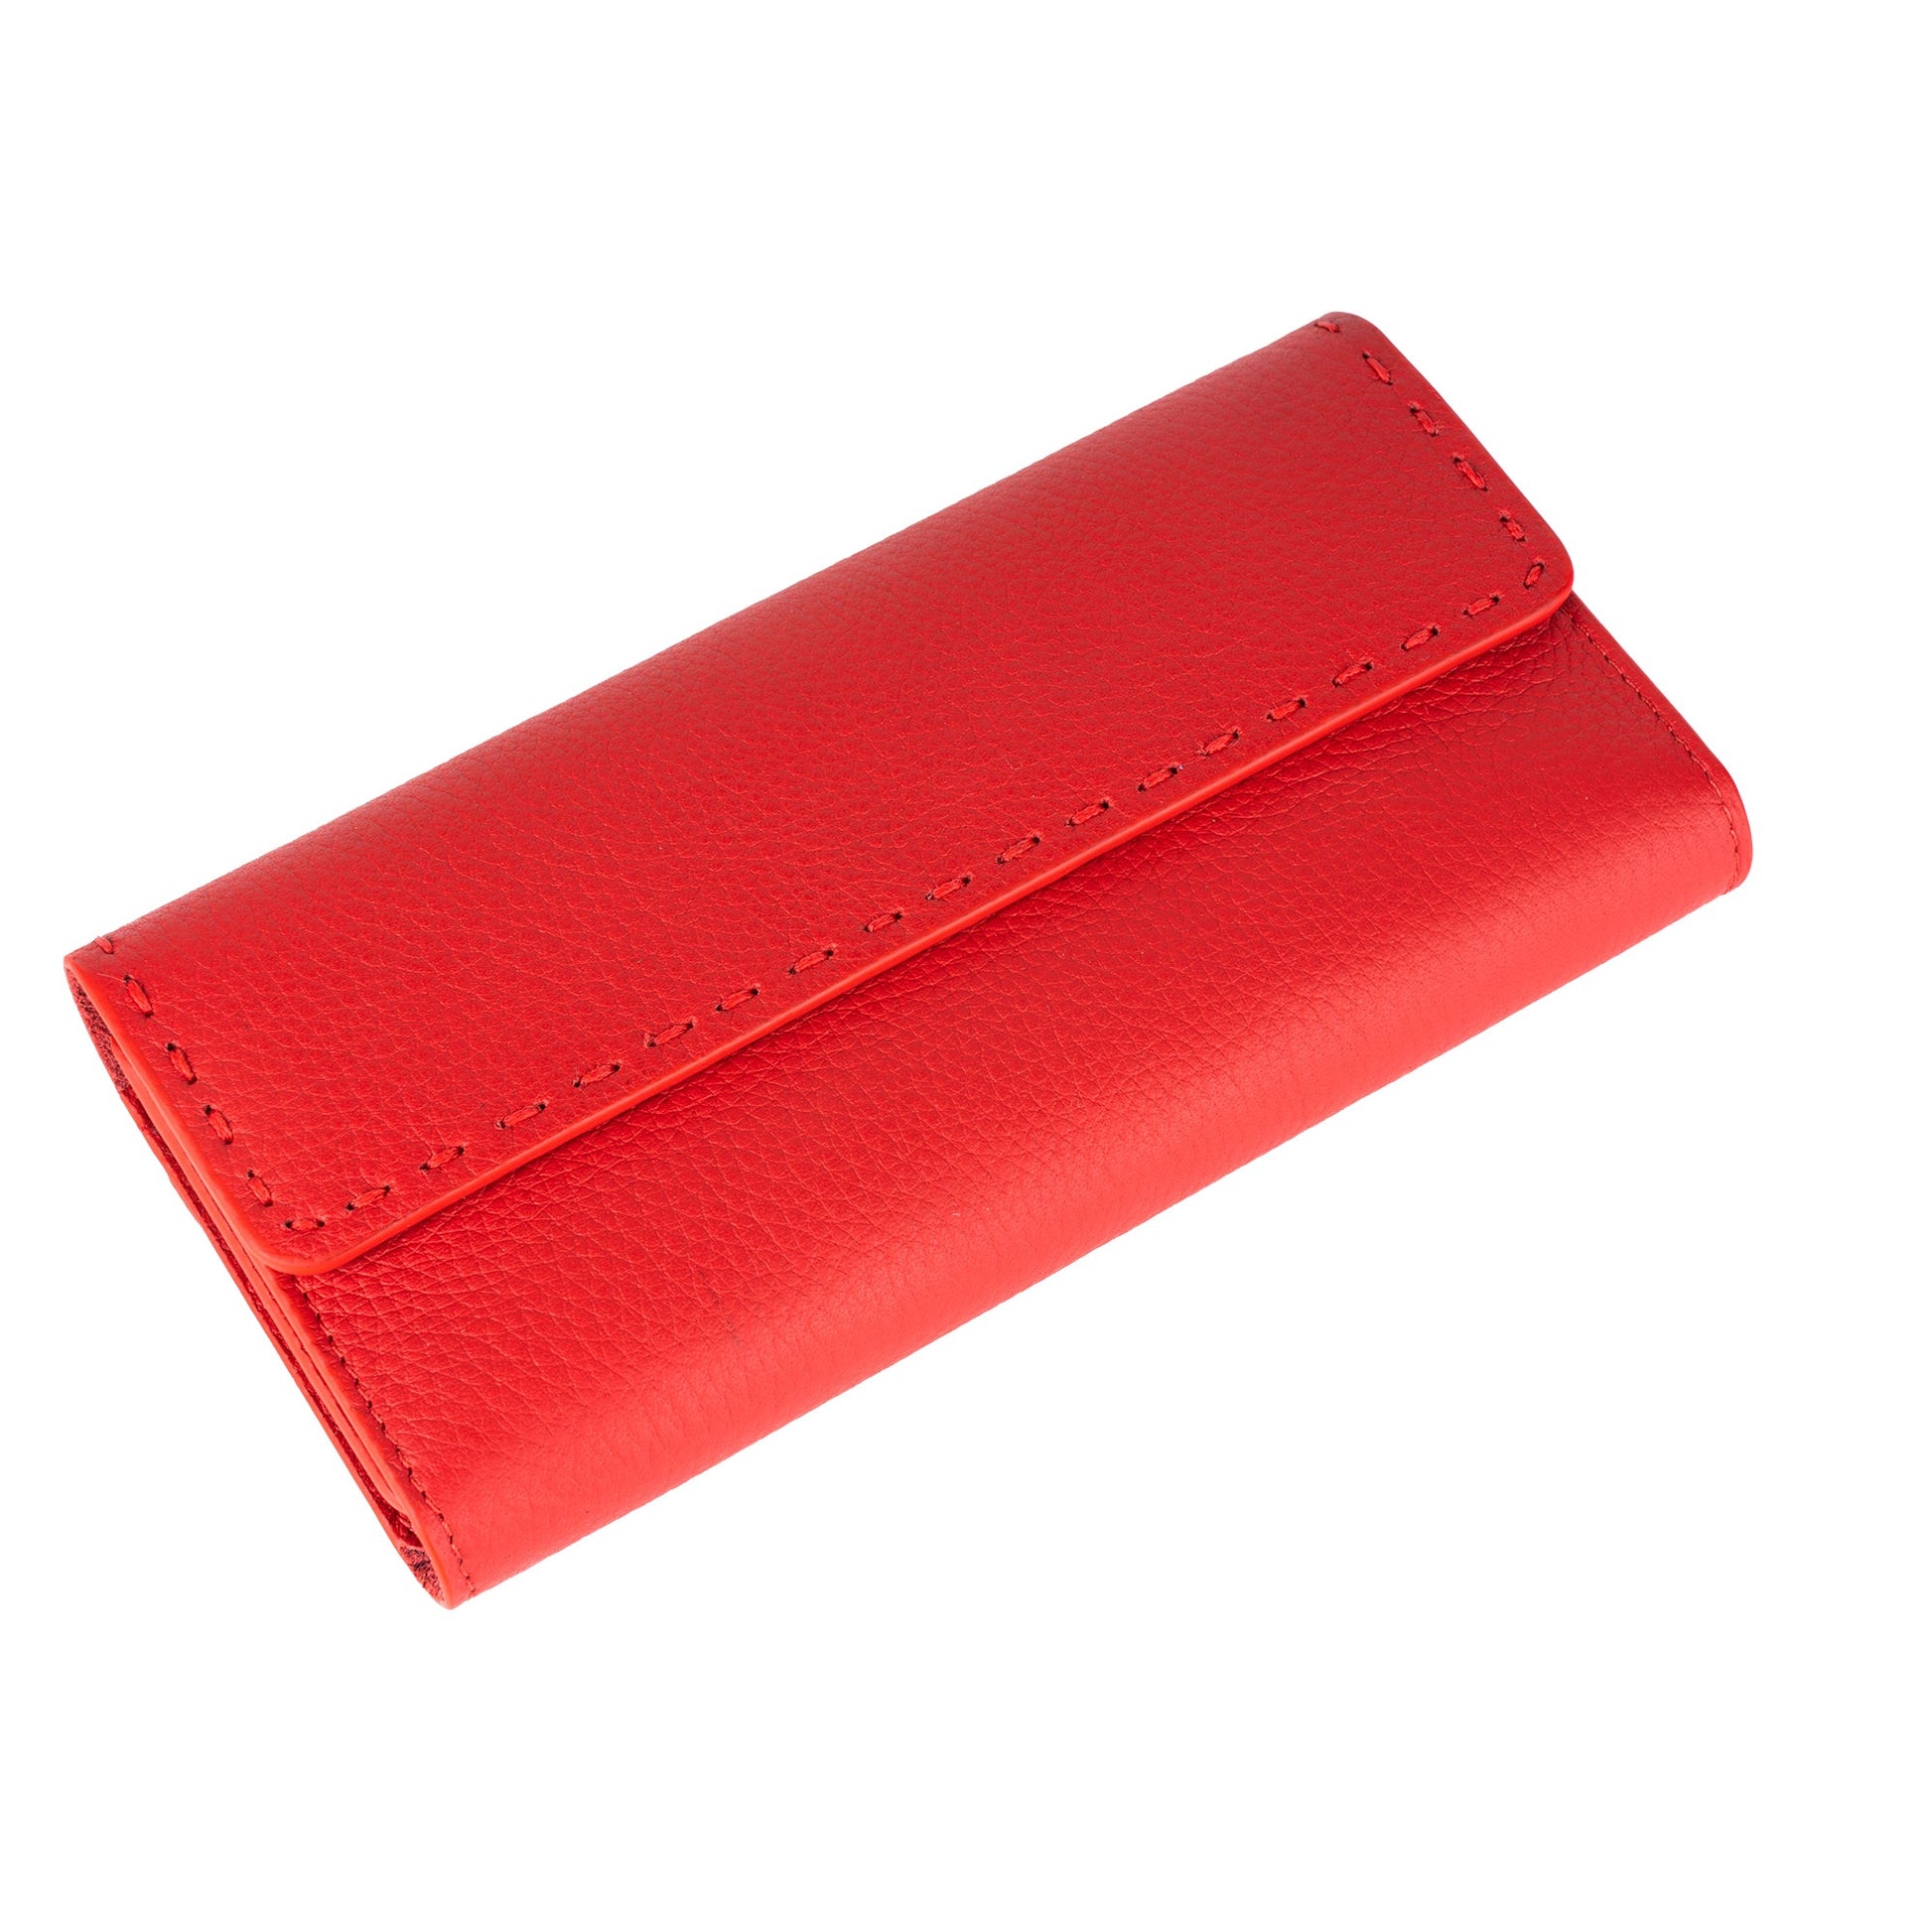 Zahara Women’s Leather Long Wallet - Wallets Zengoda Shop online from Artisan Brands